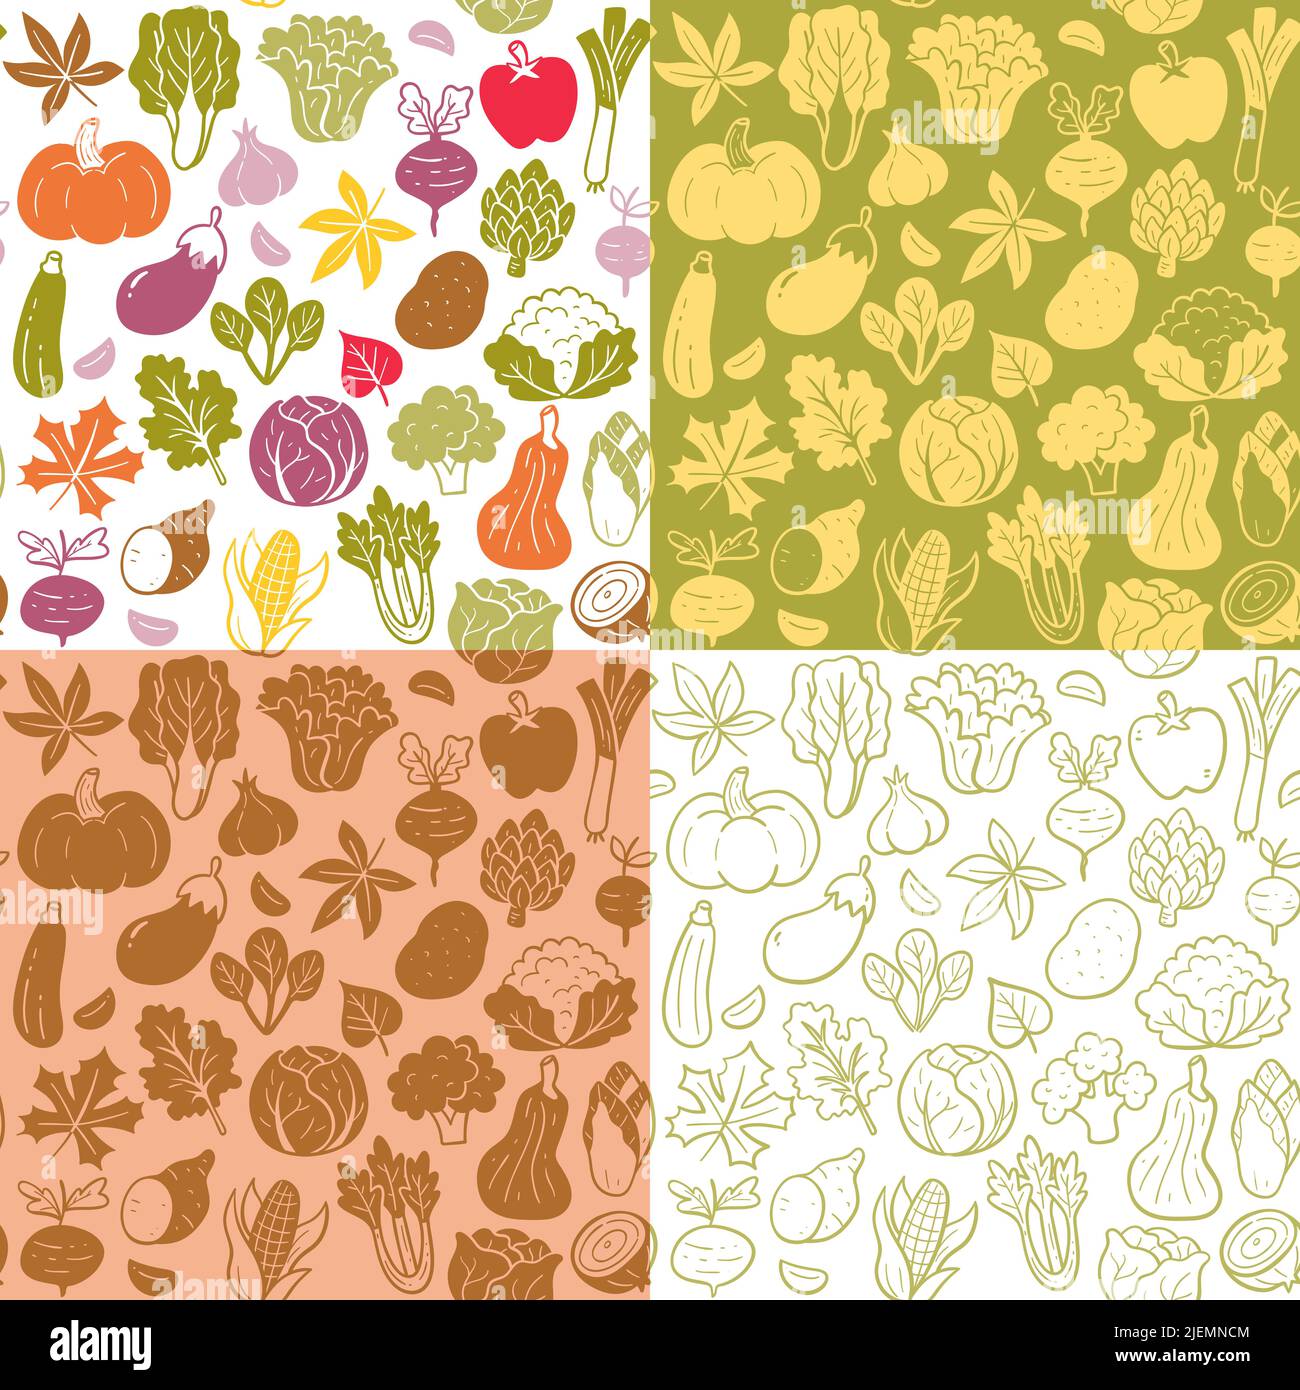 Nahtlose Musterkollektion für Gemüse der Herbstsaison. Farbenfrohe, flache Silhouette und Doodle-Style. Isoliertes Gemüse auf weißem Hintergrund. Vektor-il Stock Vektor